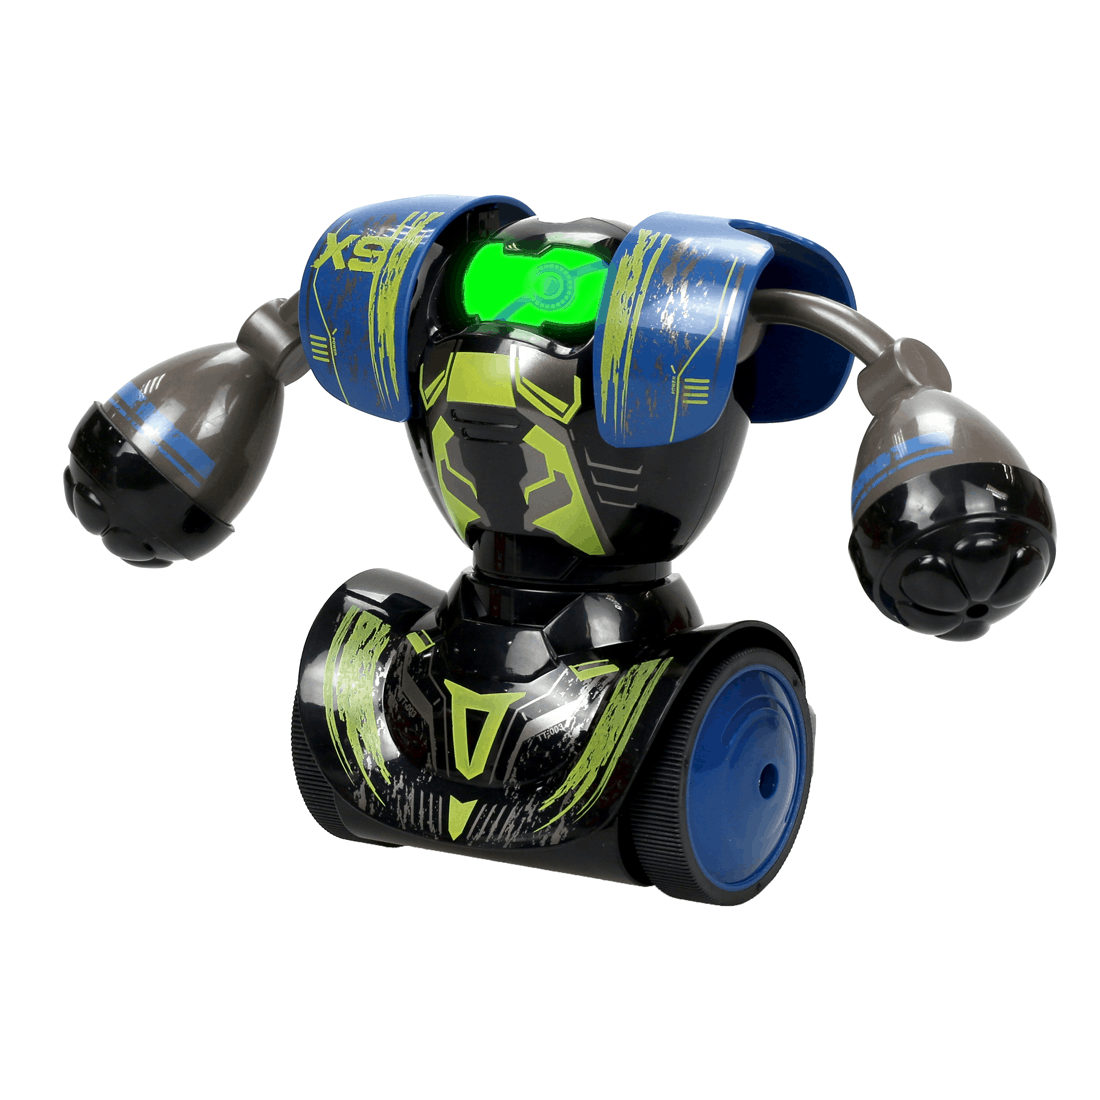 Τηλεκατευθυνόμενο Ρομπότ Robo Kombat Μονή Συσκευασία Προπόνησης - Μπλε